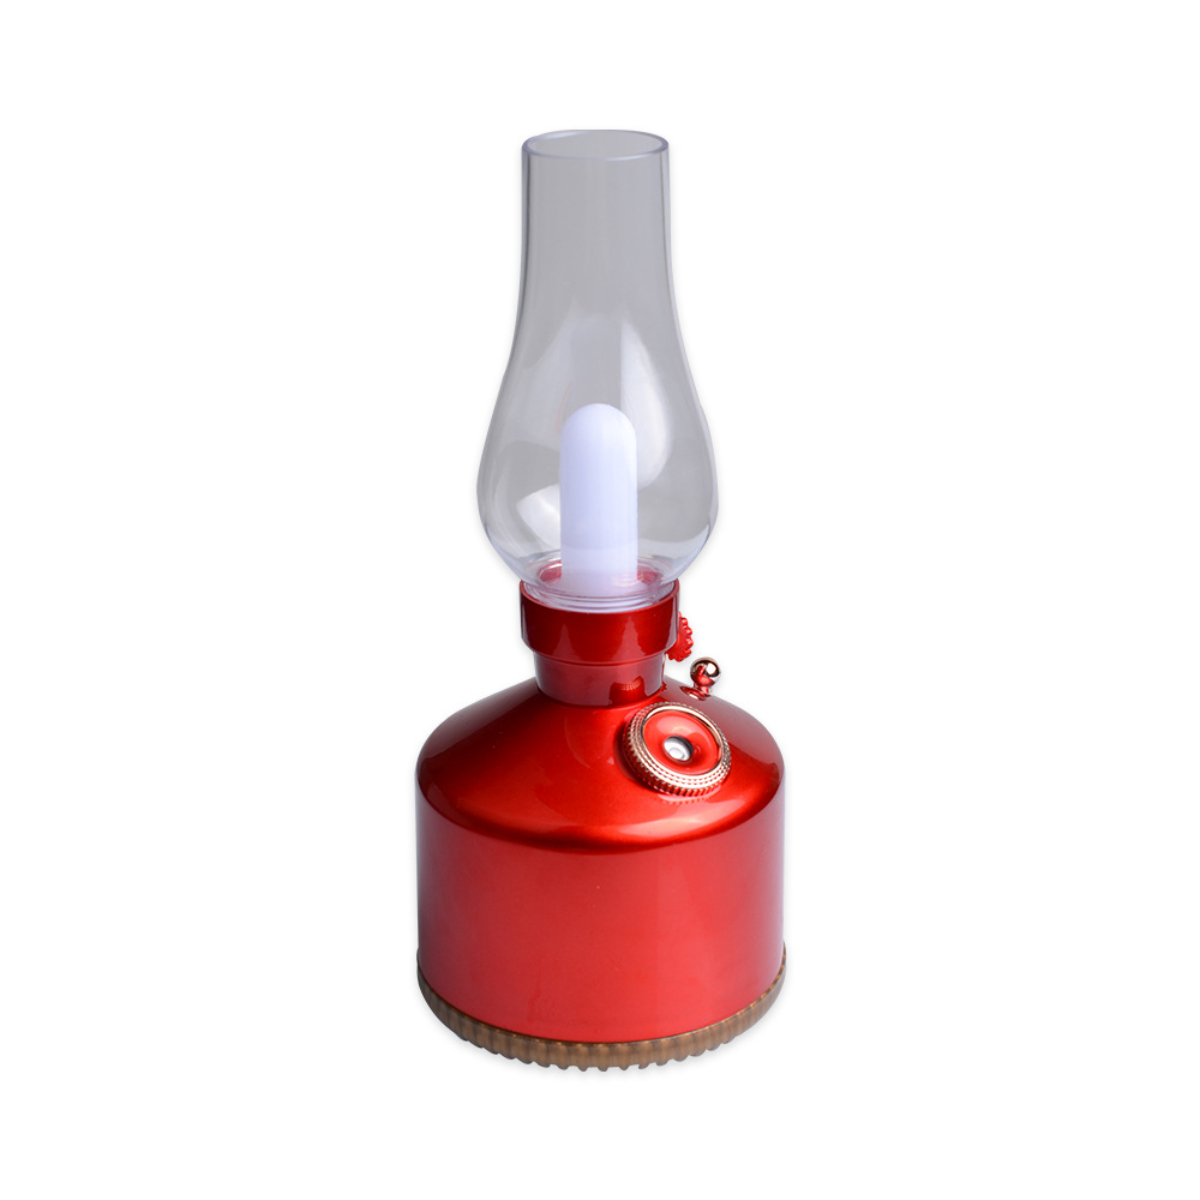 LACAMAX Mini-Handluftbefeuchter, Raumgröße: Geschwindigkeiten, Watt, 2 m²) Ultraschall-Luftreinigung, Luftbefeuchter Rot 10 Farblicht, (1,5 Vernebelung